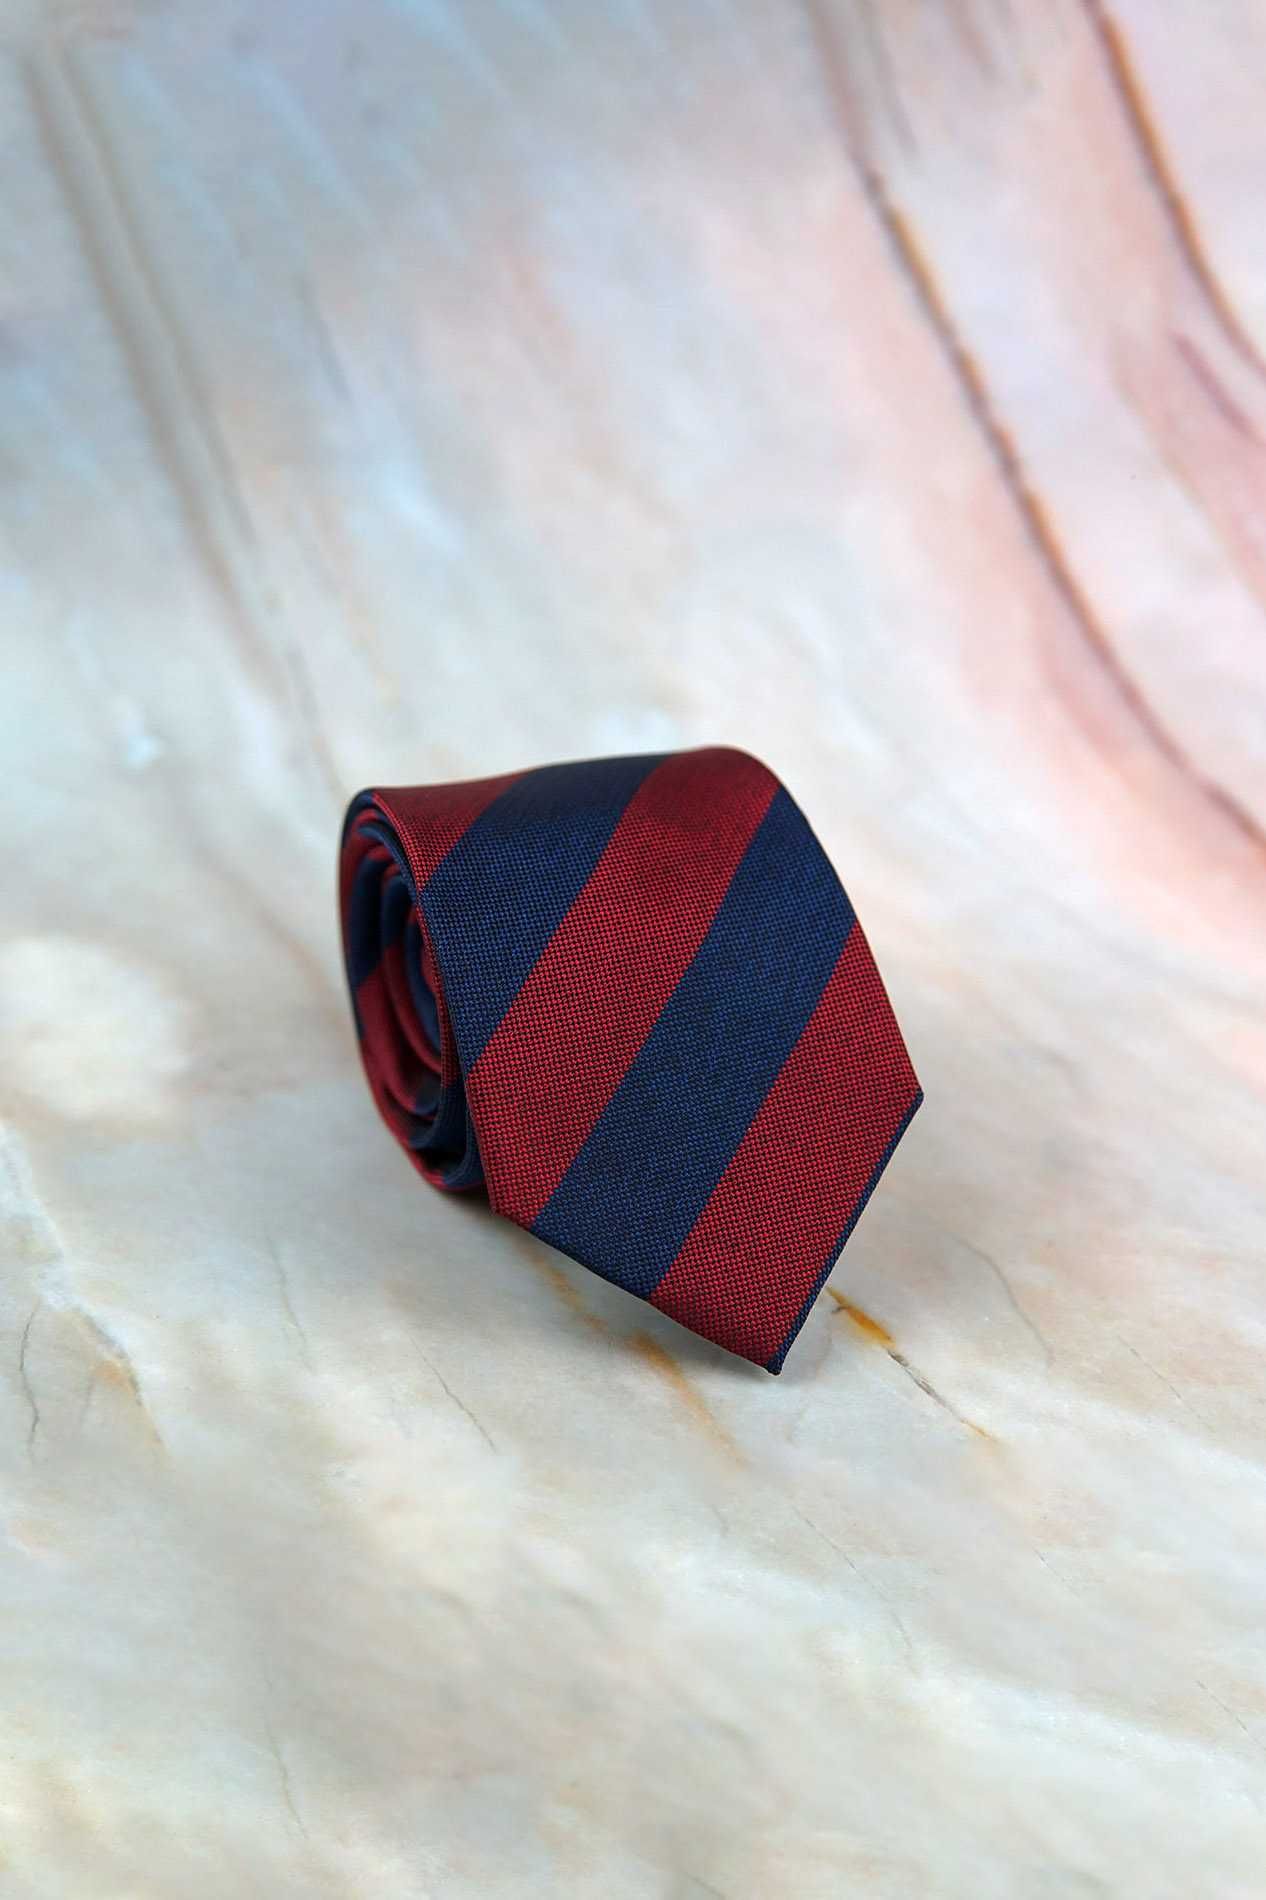 NOWY krawat regimental jedwabny granatowo-bordowy jedwab szeroki pasy